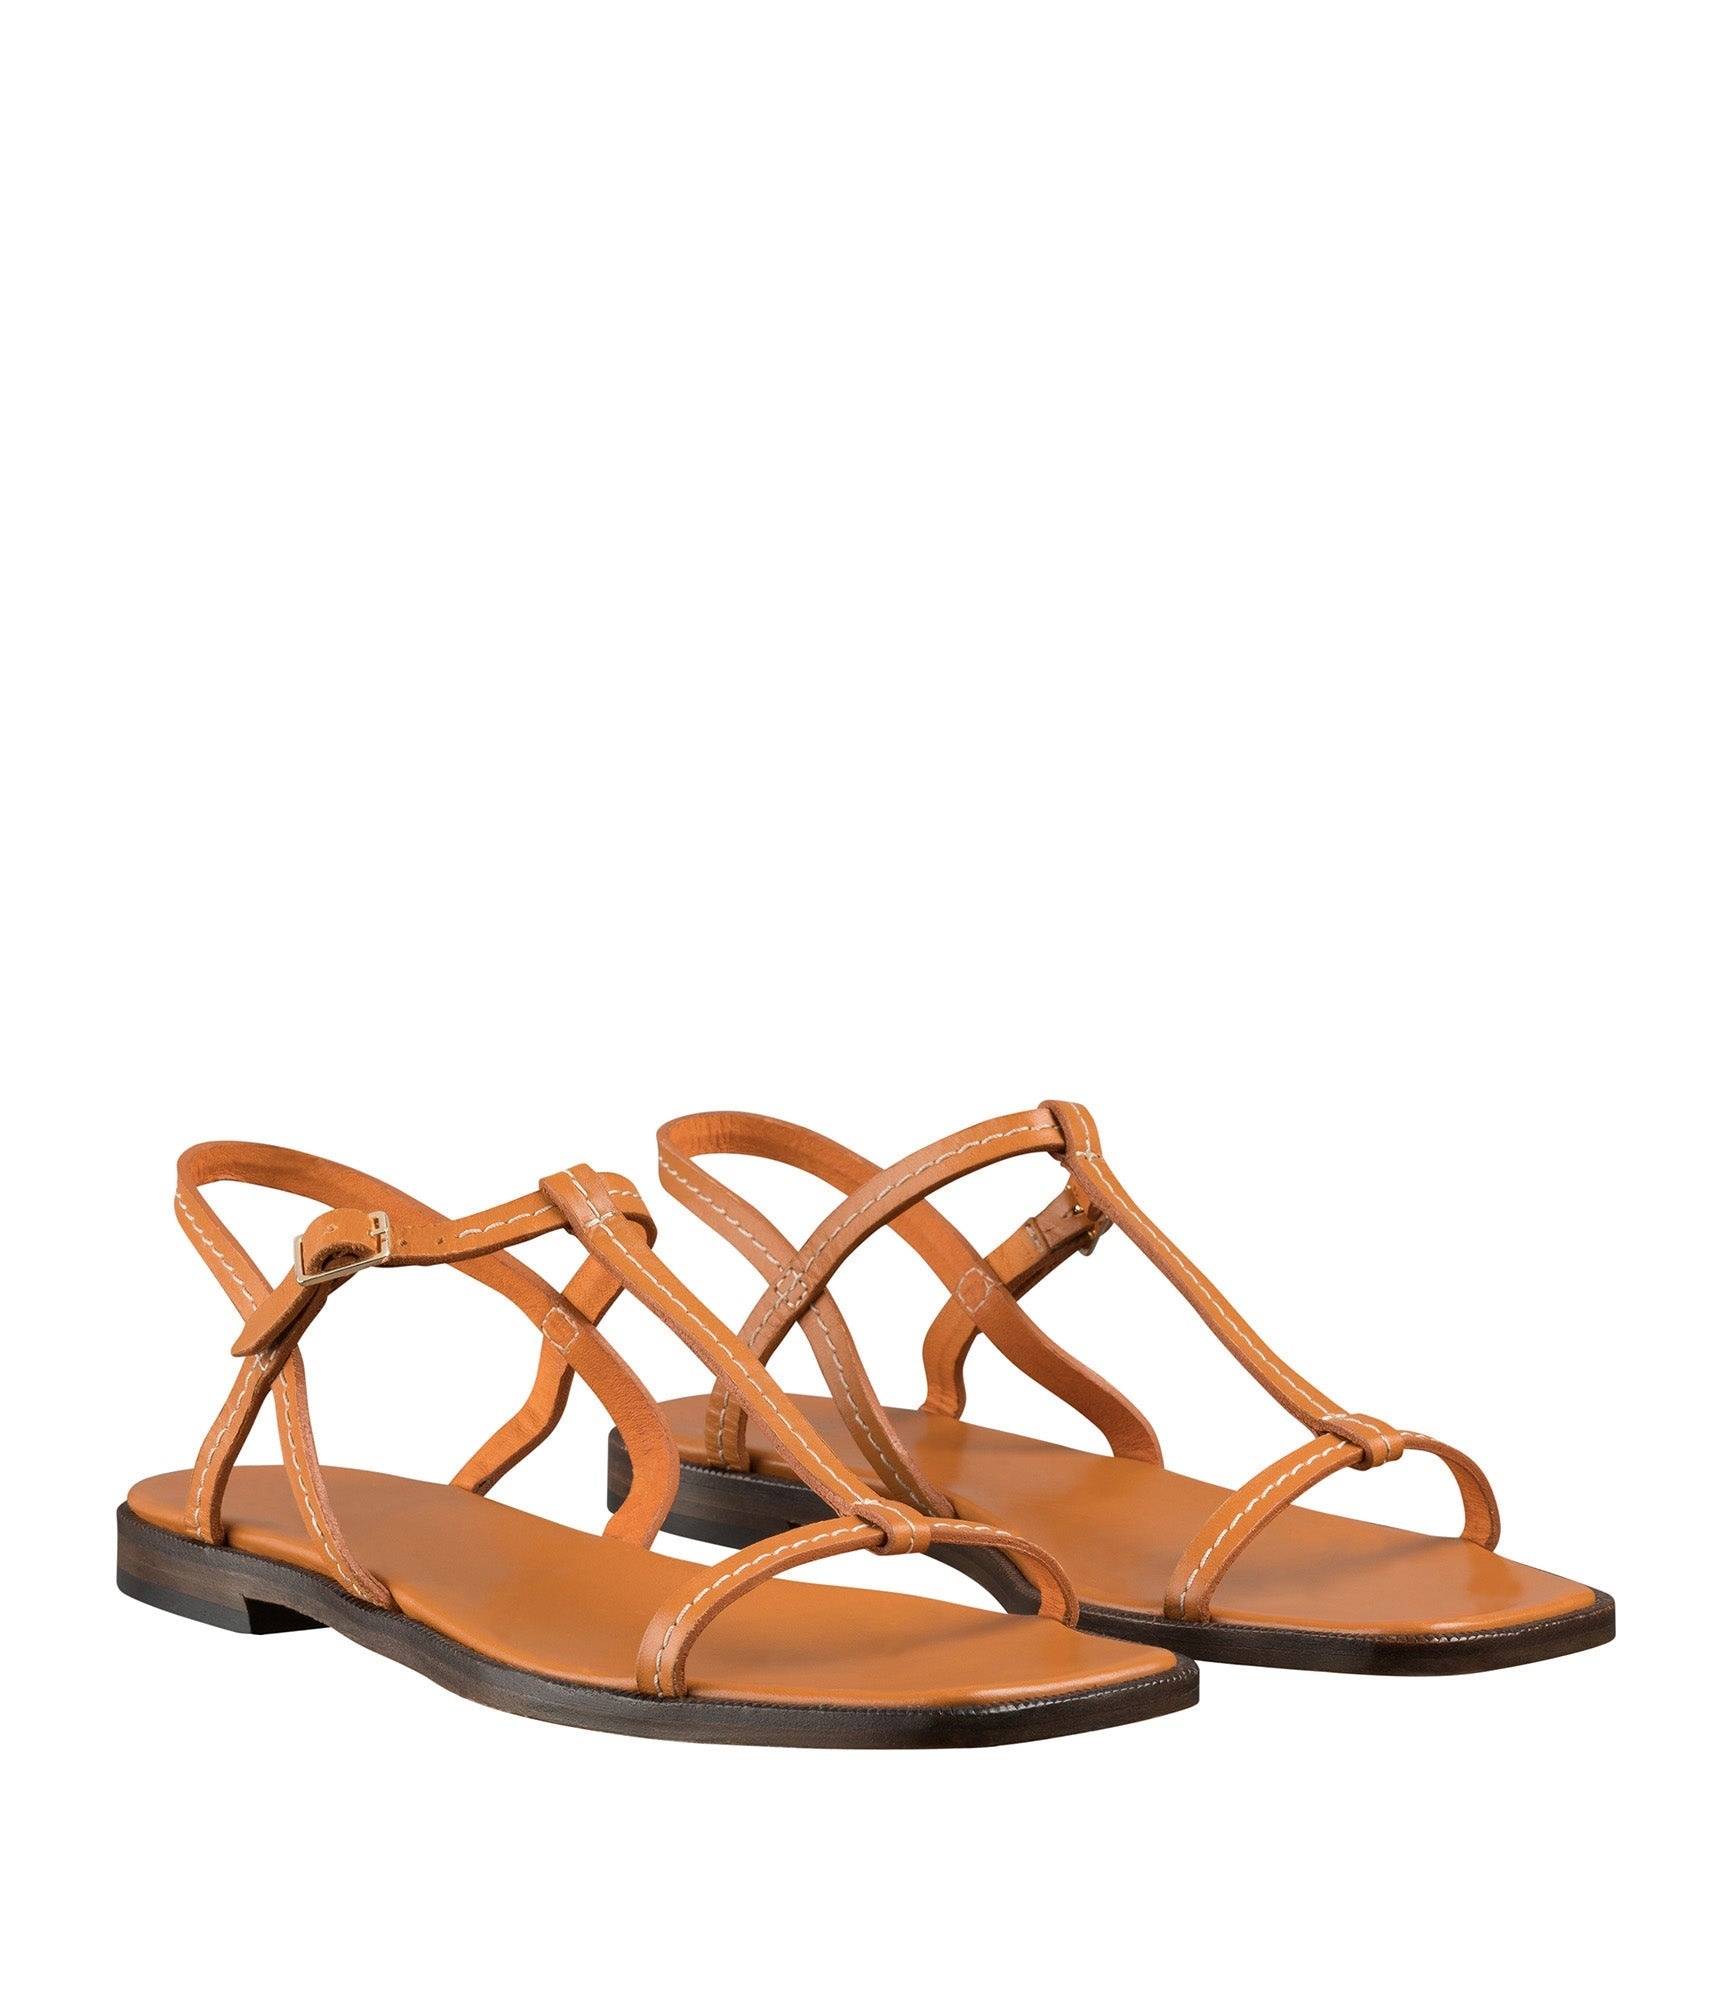 Alba sandals - 3